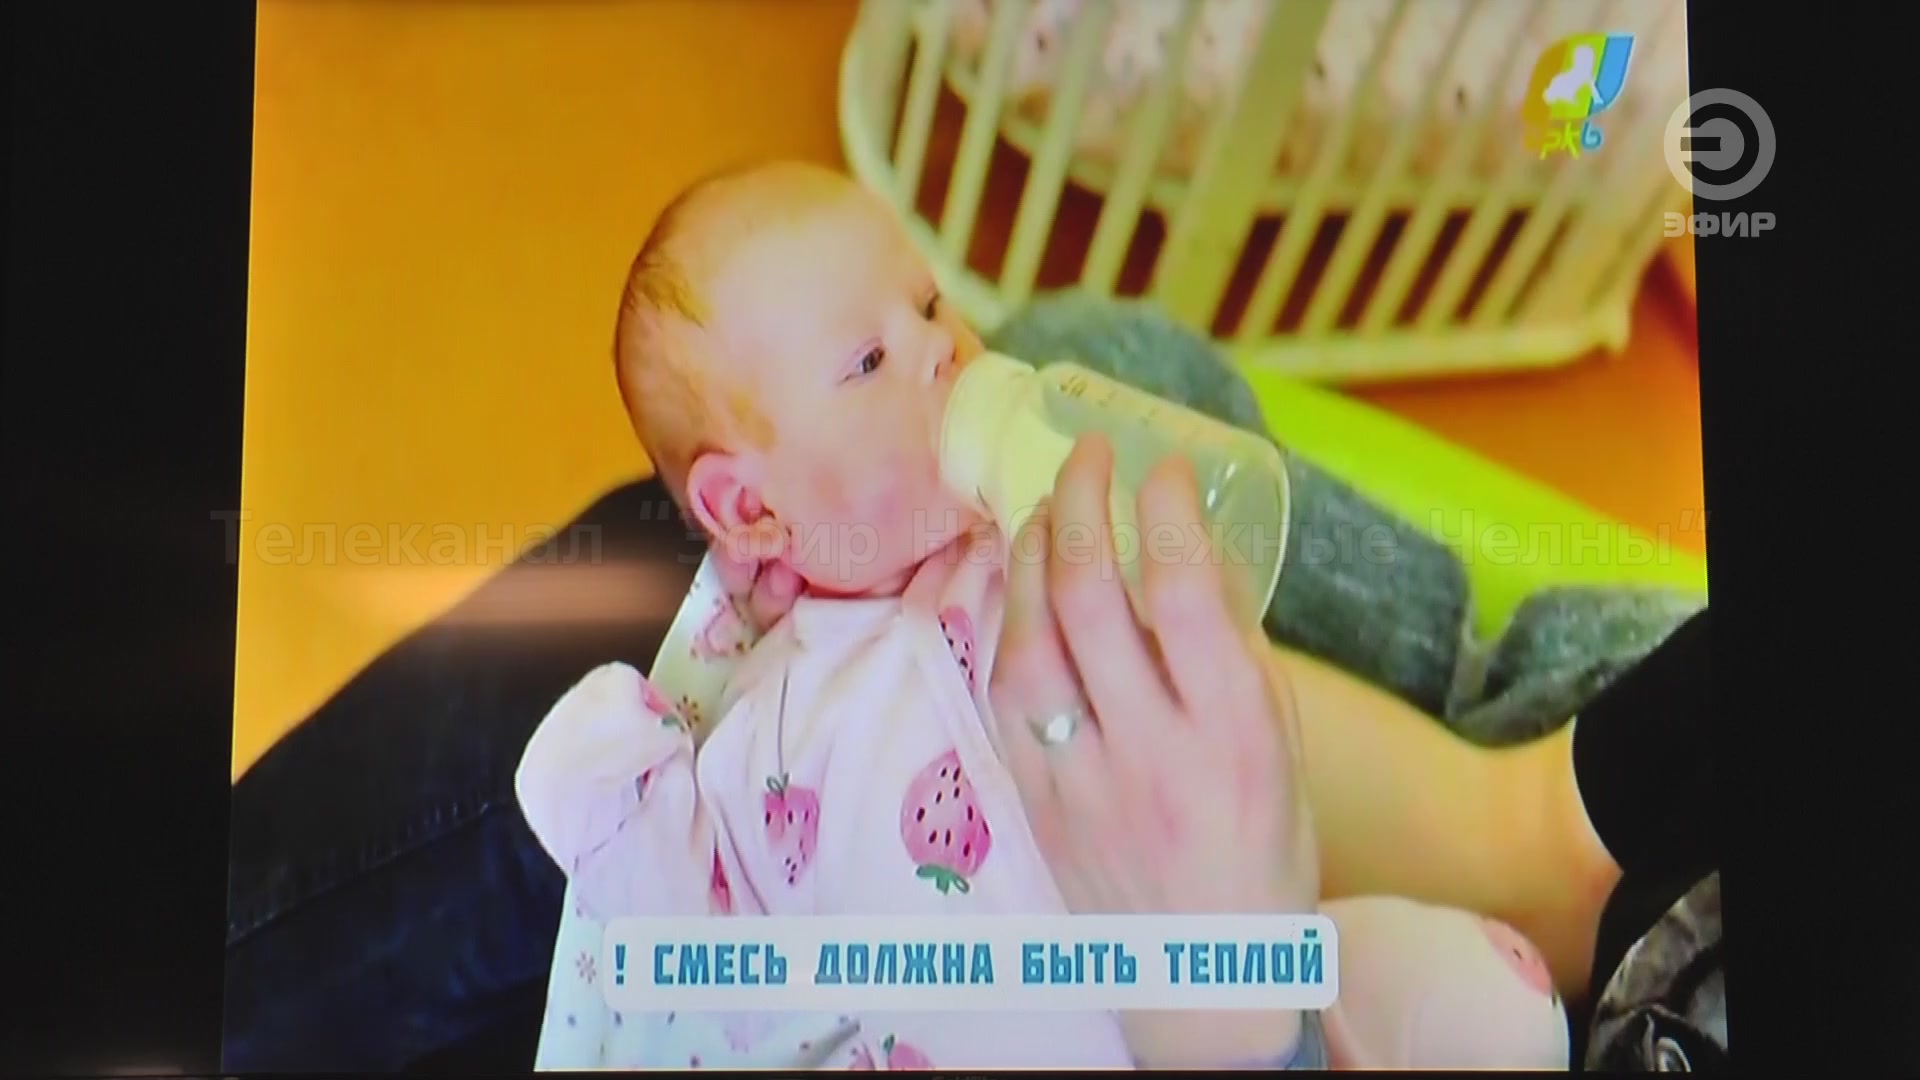 Ежегодно в России происходят случаи, когда младенцы гибнут в результате несчастных случаев